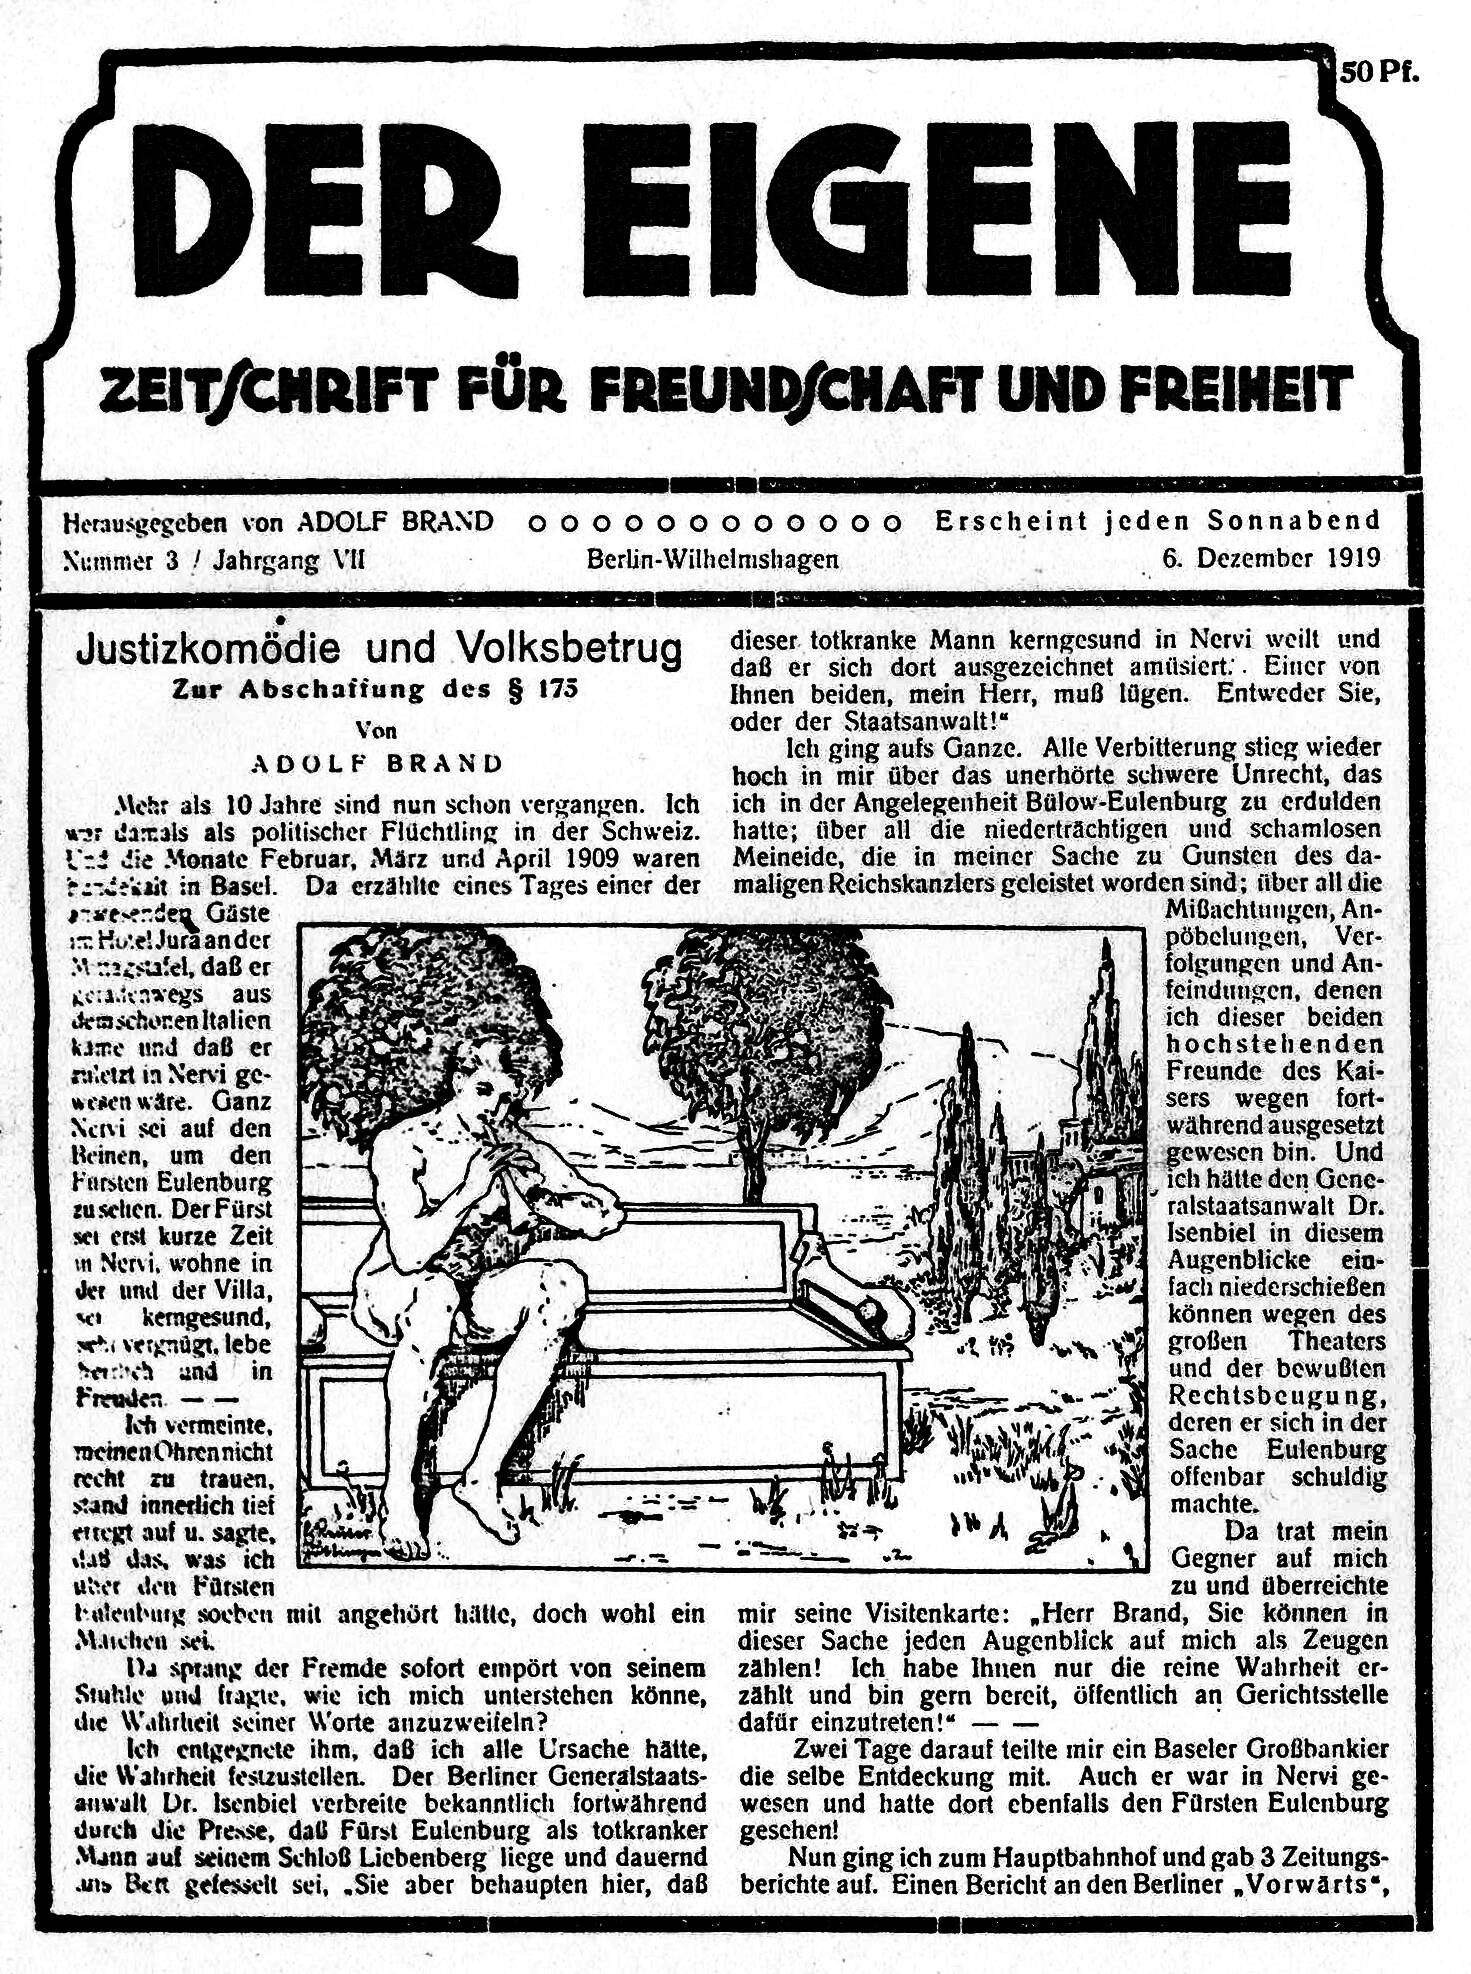 Página do Der Eigene, folhetim do século 20 que falava sobre homoerotismo. Foto: Reprodução/Wikipedia